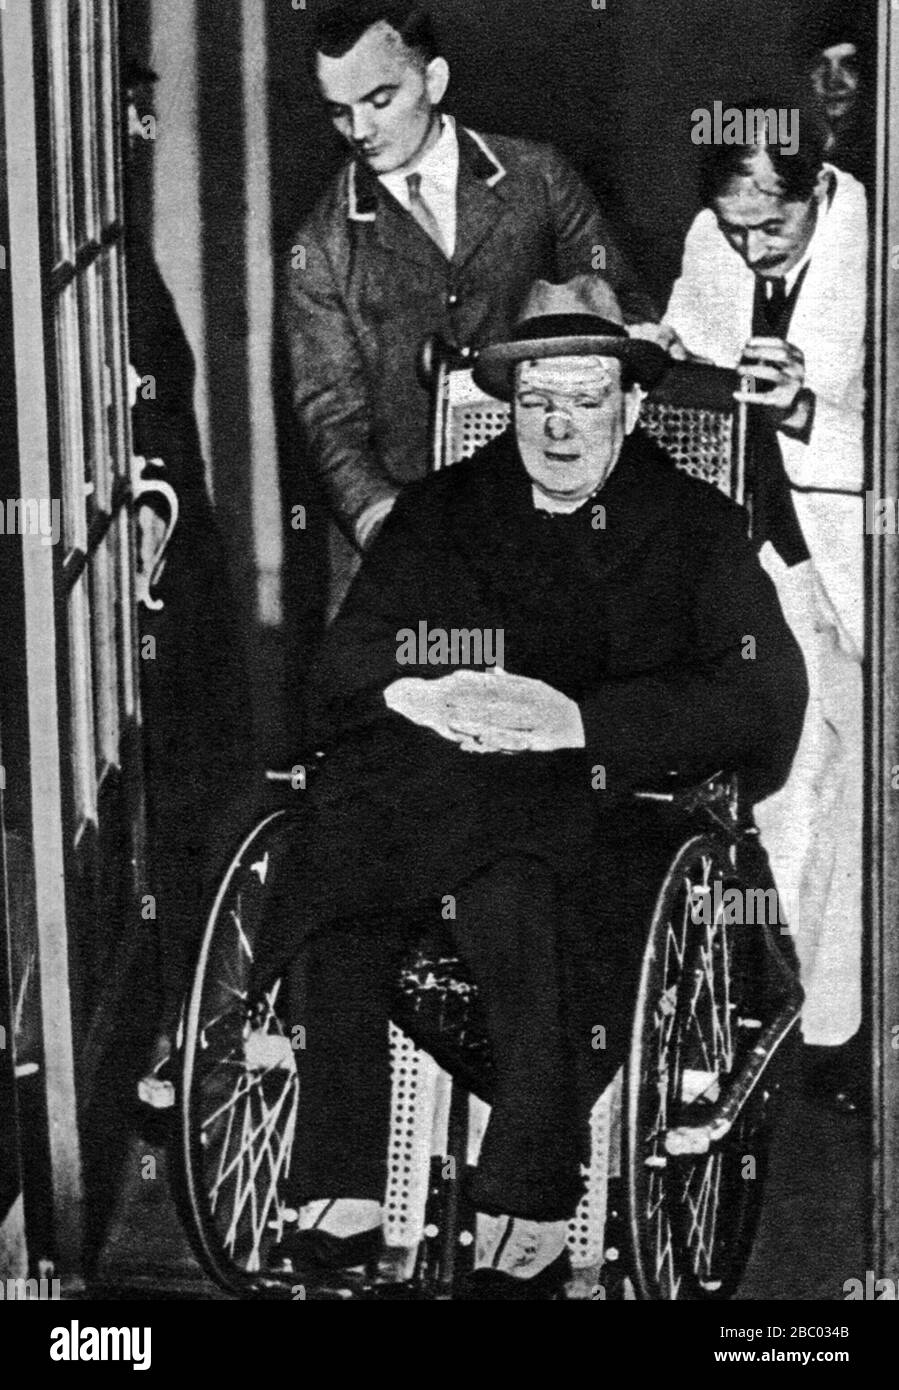 Winston Churchill en una silla de ruedas habiendo estado en una colisión con un taxi mientras cruzaba la Quinta Avenida, Nueva York. Diciembre de 1931 Foto de stock